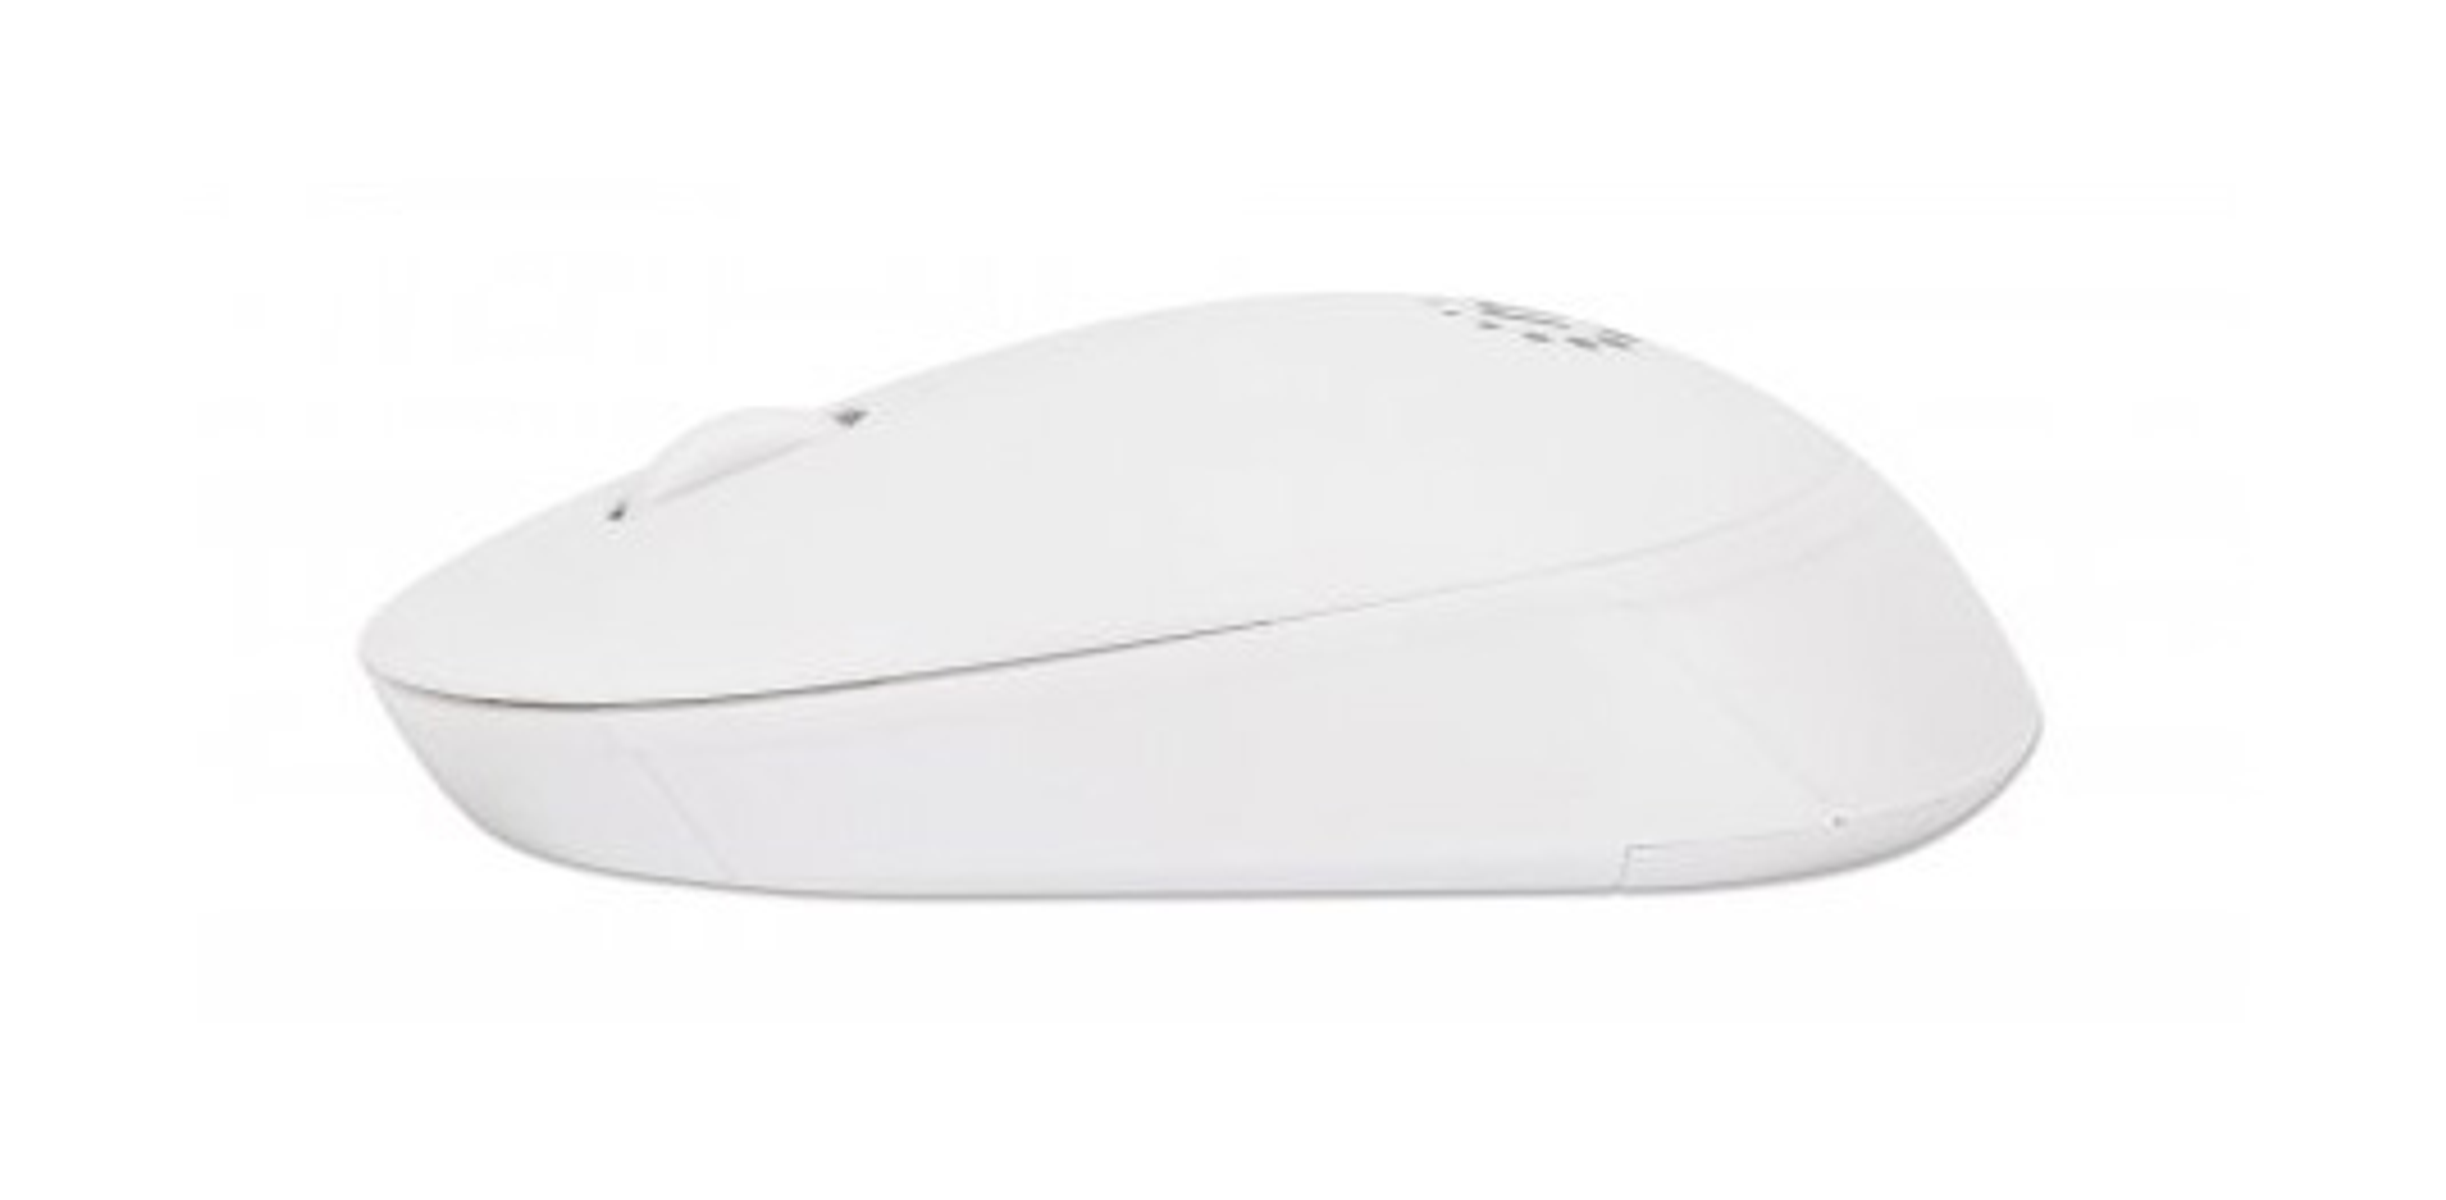 III USB-Maus MANHATTAN Eingabe Maus, / Mäuse Performance Ausgabe MANHATTAN Kabellose weiß